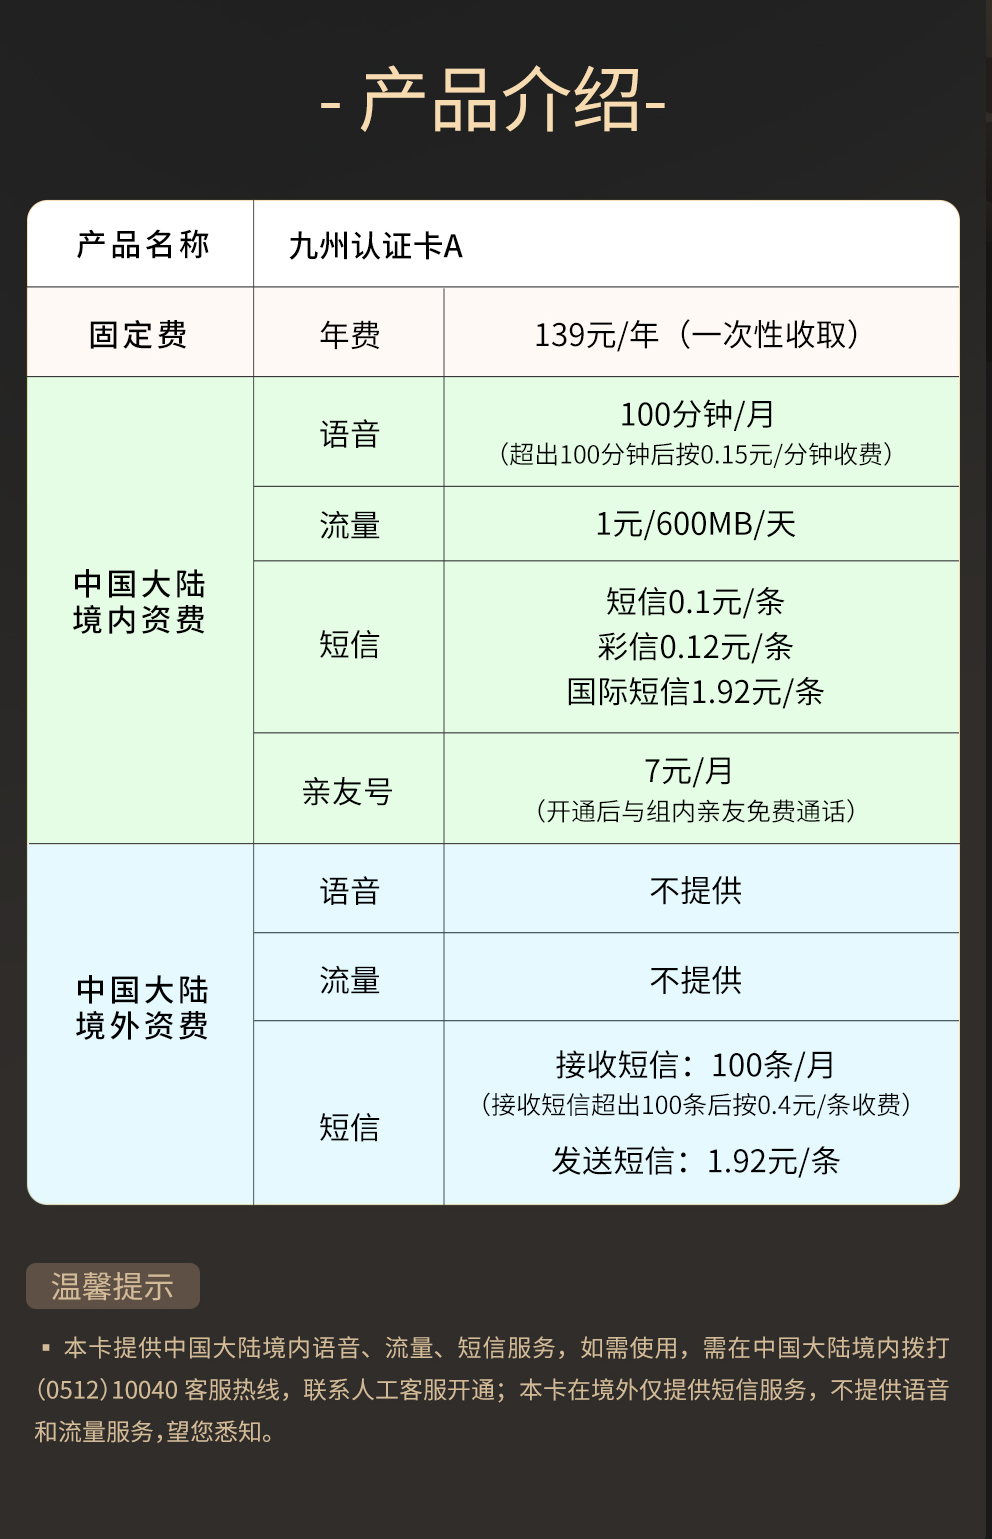 蜗牛移动九州认证卡：认证中国APP、门户网站的便捷之选